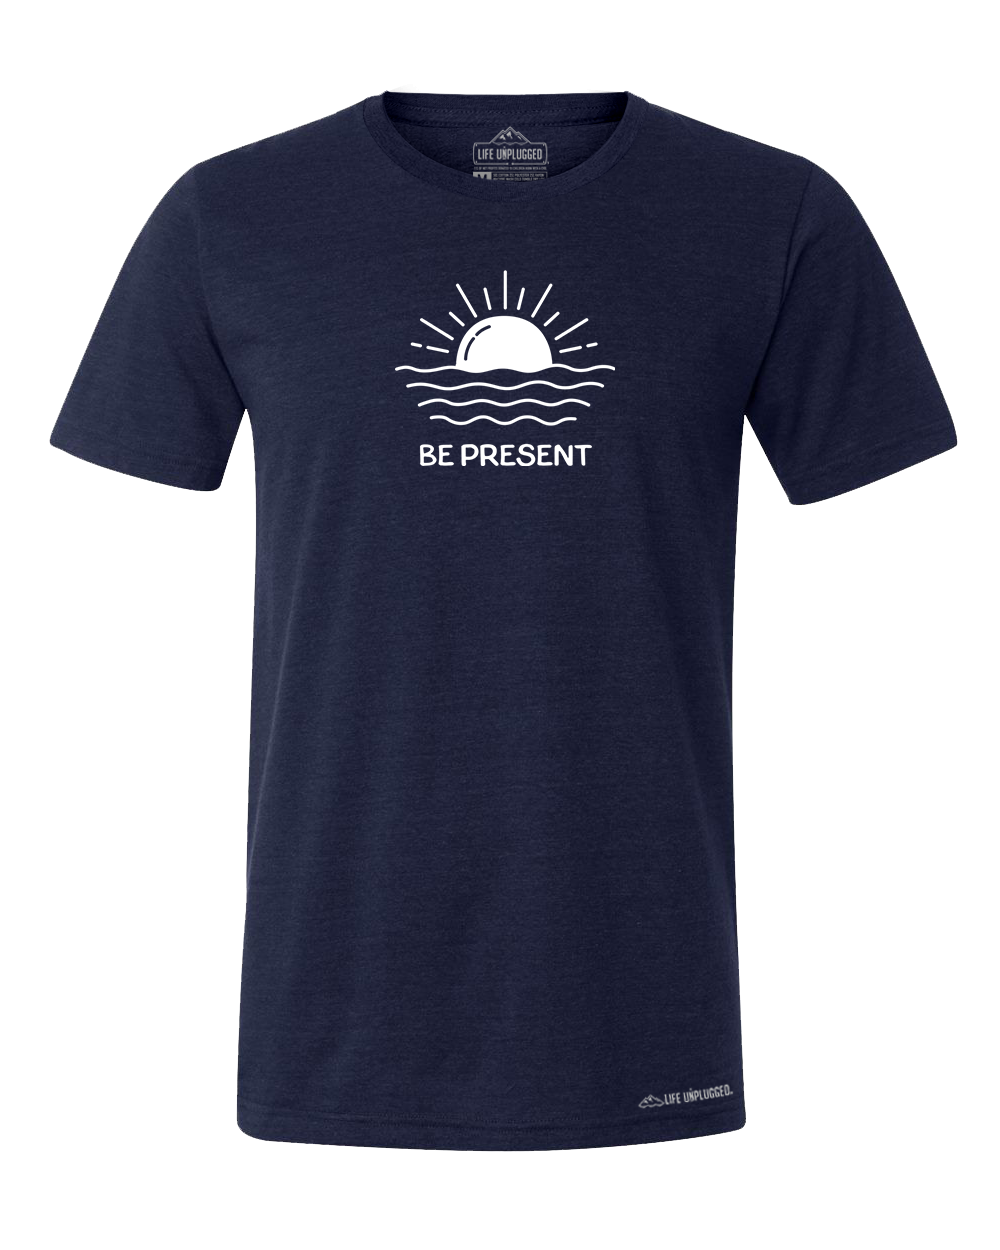 OCEAN SUNSET Premium Triblend T-Shirt